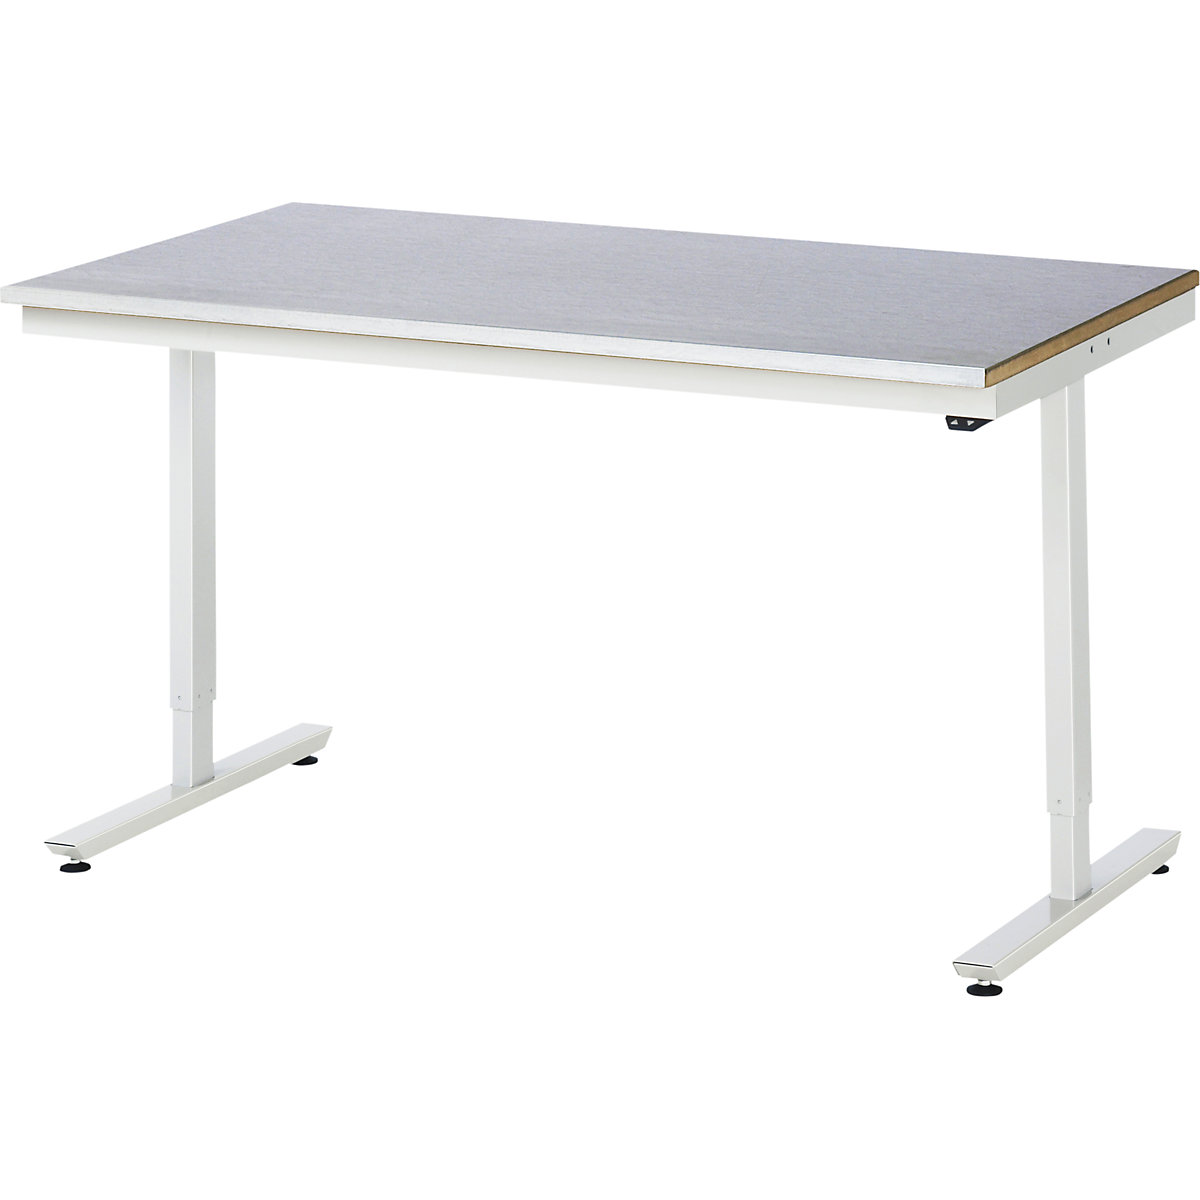 Psací stůl s elektrickým přestavováním výšky – RAU, ocelový povlak, nosnost 150 kg, š x h 1500 x 800 mm-13